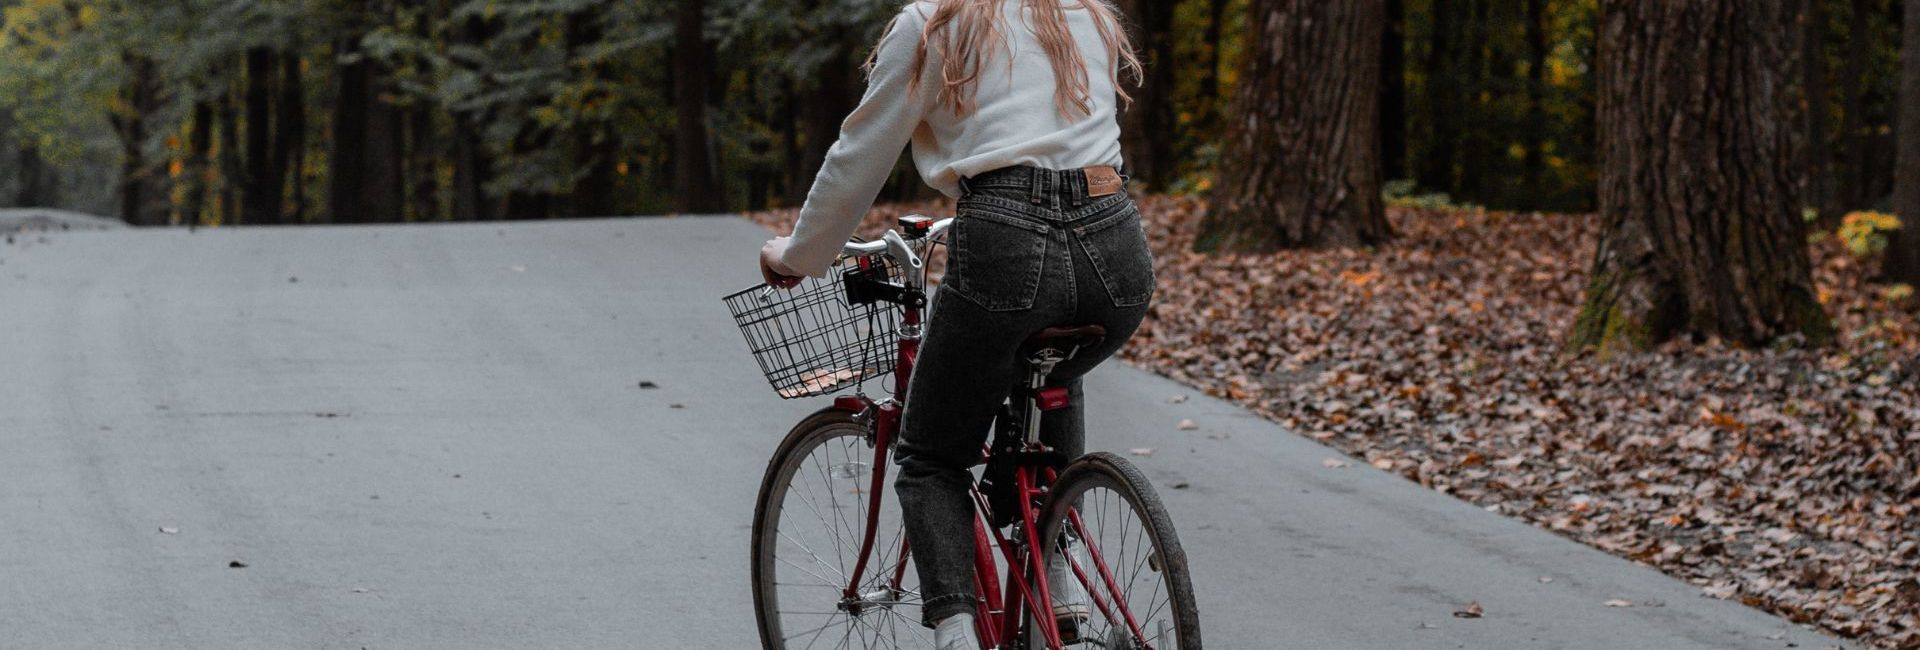 femme sur un vélo